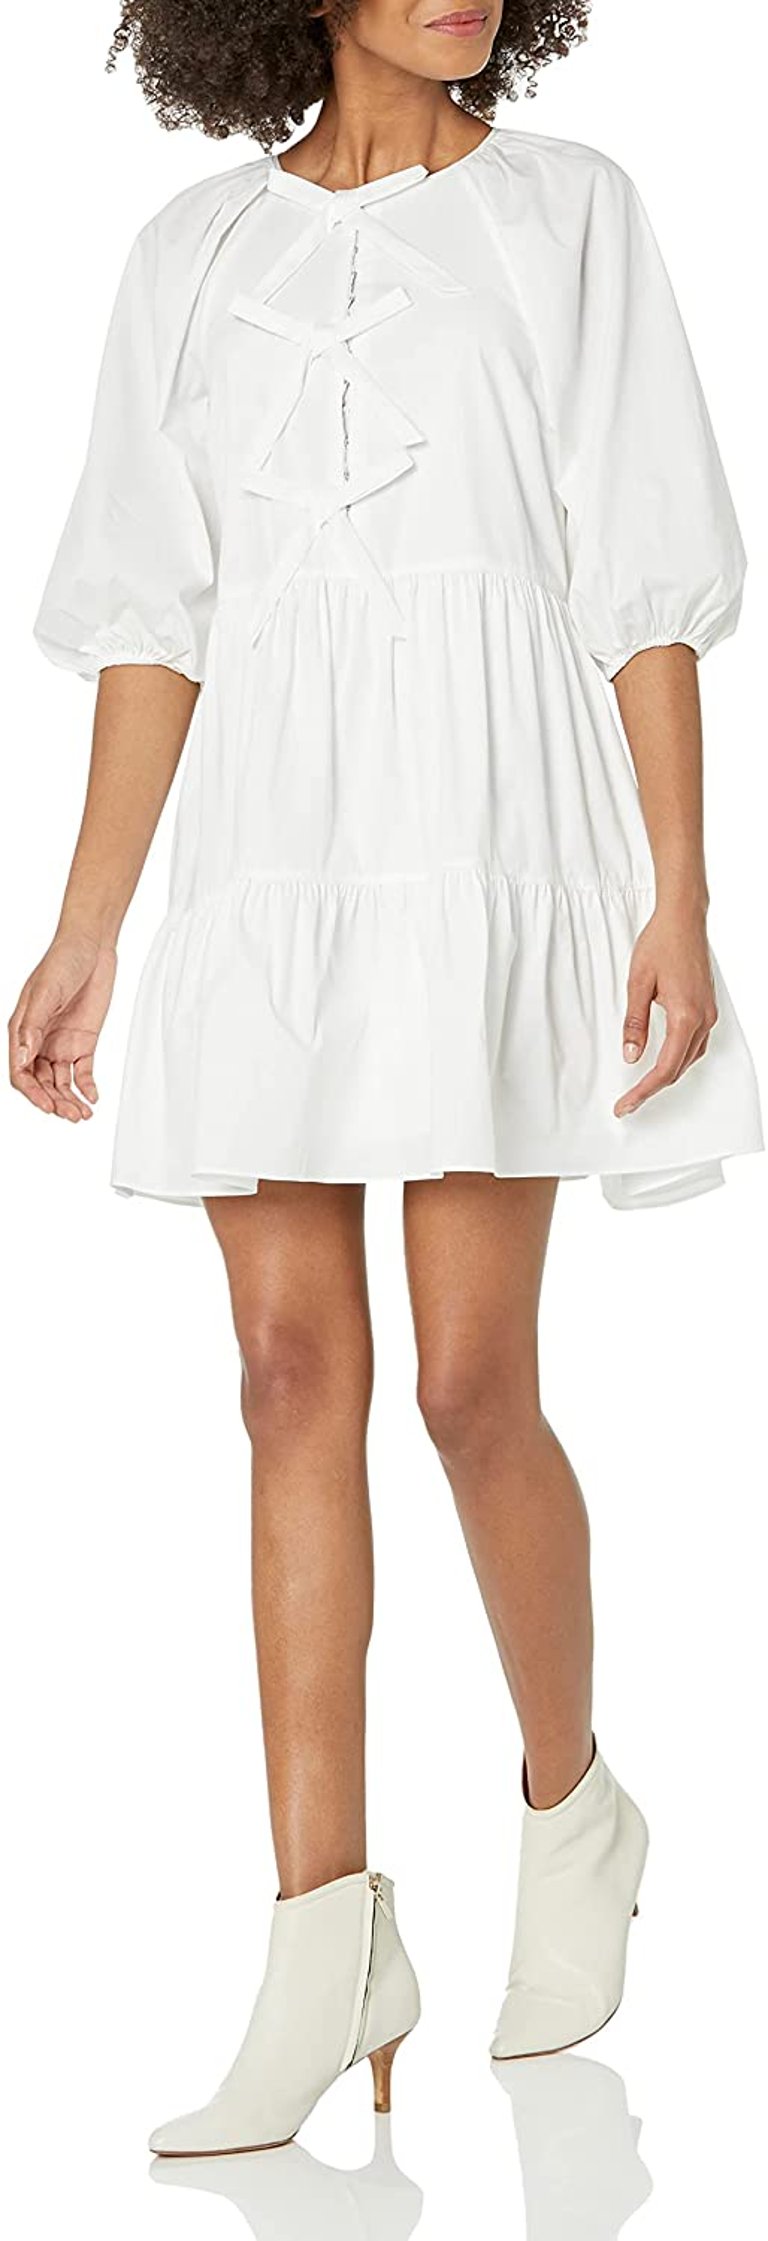 Women's Lynn White Cotton Bow Detail Mini Dress - White